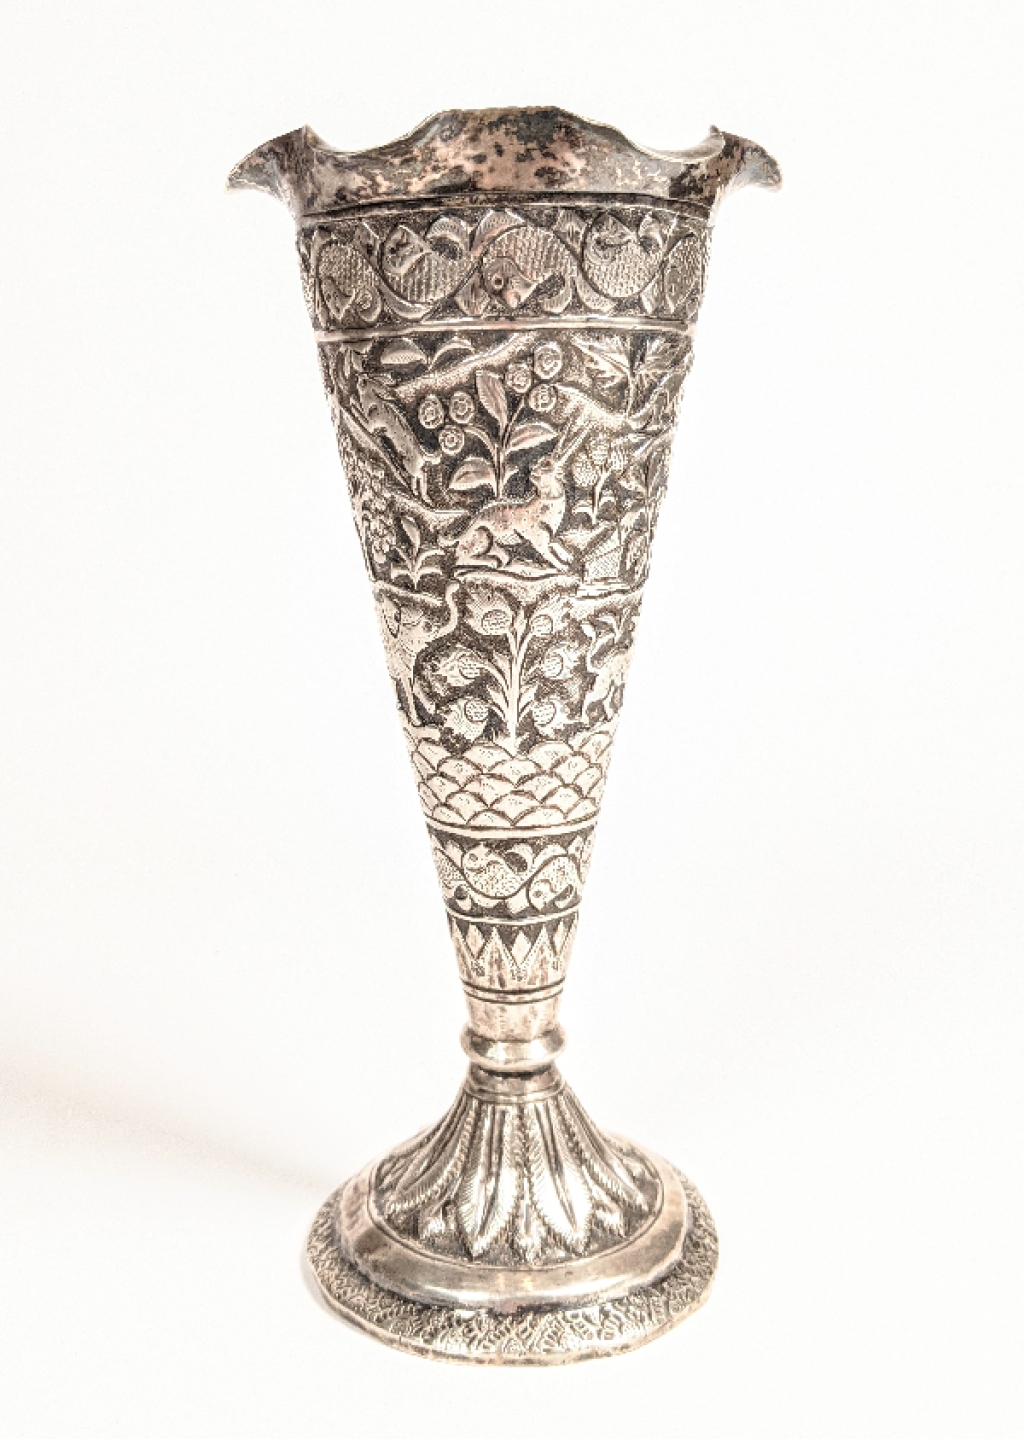 [srebro, Indo-Persja, XIX w.] Pucharek z motywem zwierzęco-roślinnym